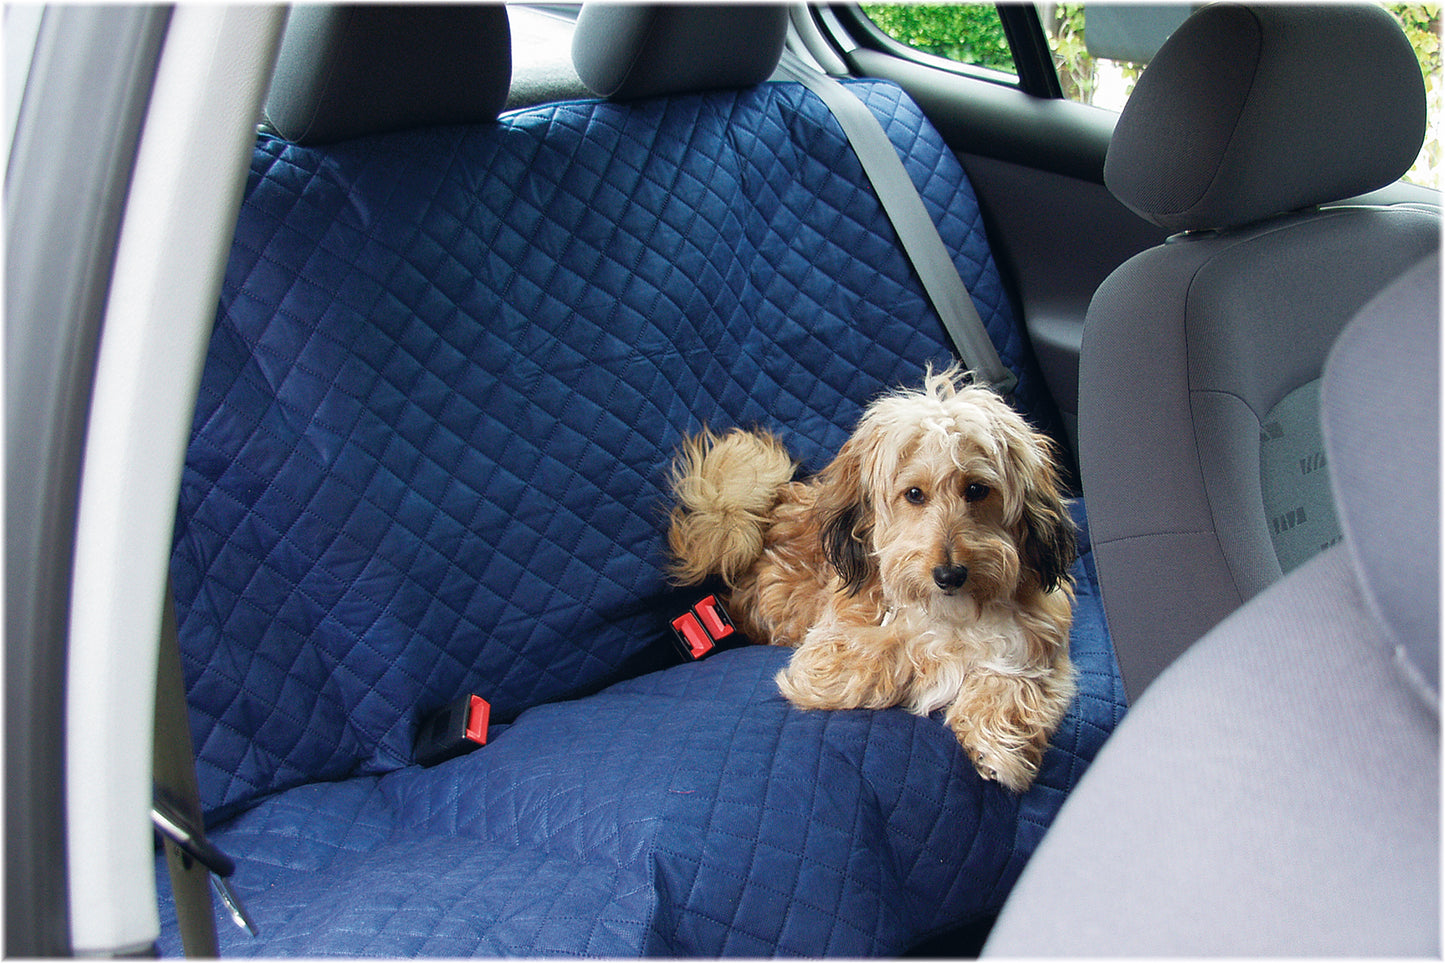 Dit nylon hondendeken is gemakkelijk mee te nemen in de auto en kan worden gebruikt op de achterbank. Het deken heeft elastische bandjes om het eenvoudig op de achterbank te kunnen bevestigen. Bovendien heeft het deken gaten waar de veiligheidsriemen doorheen kunnen. Met dit deken ligt jouw hond comfortabel op de achterbank!